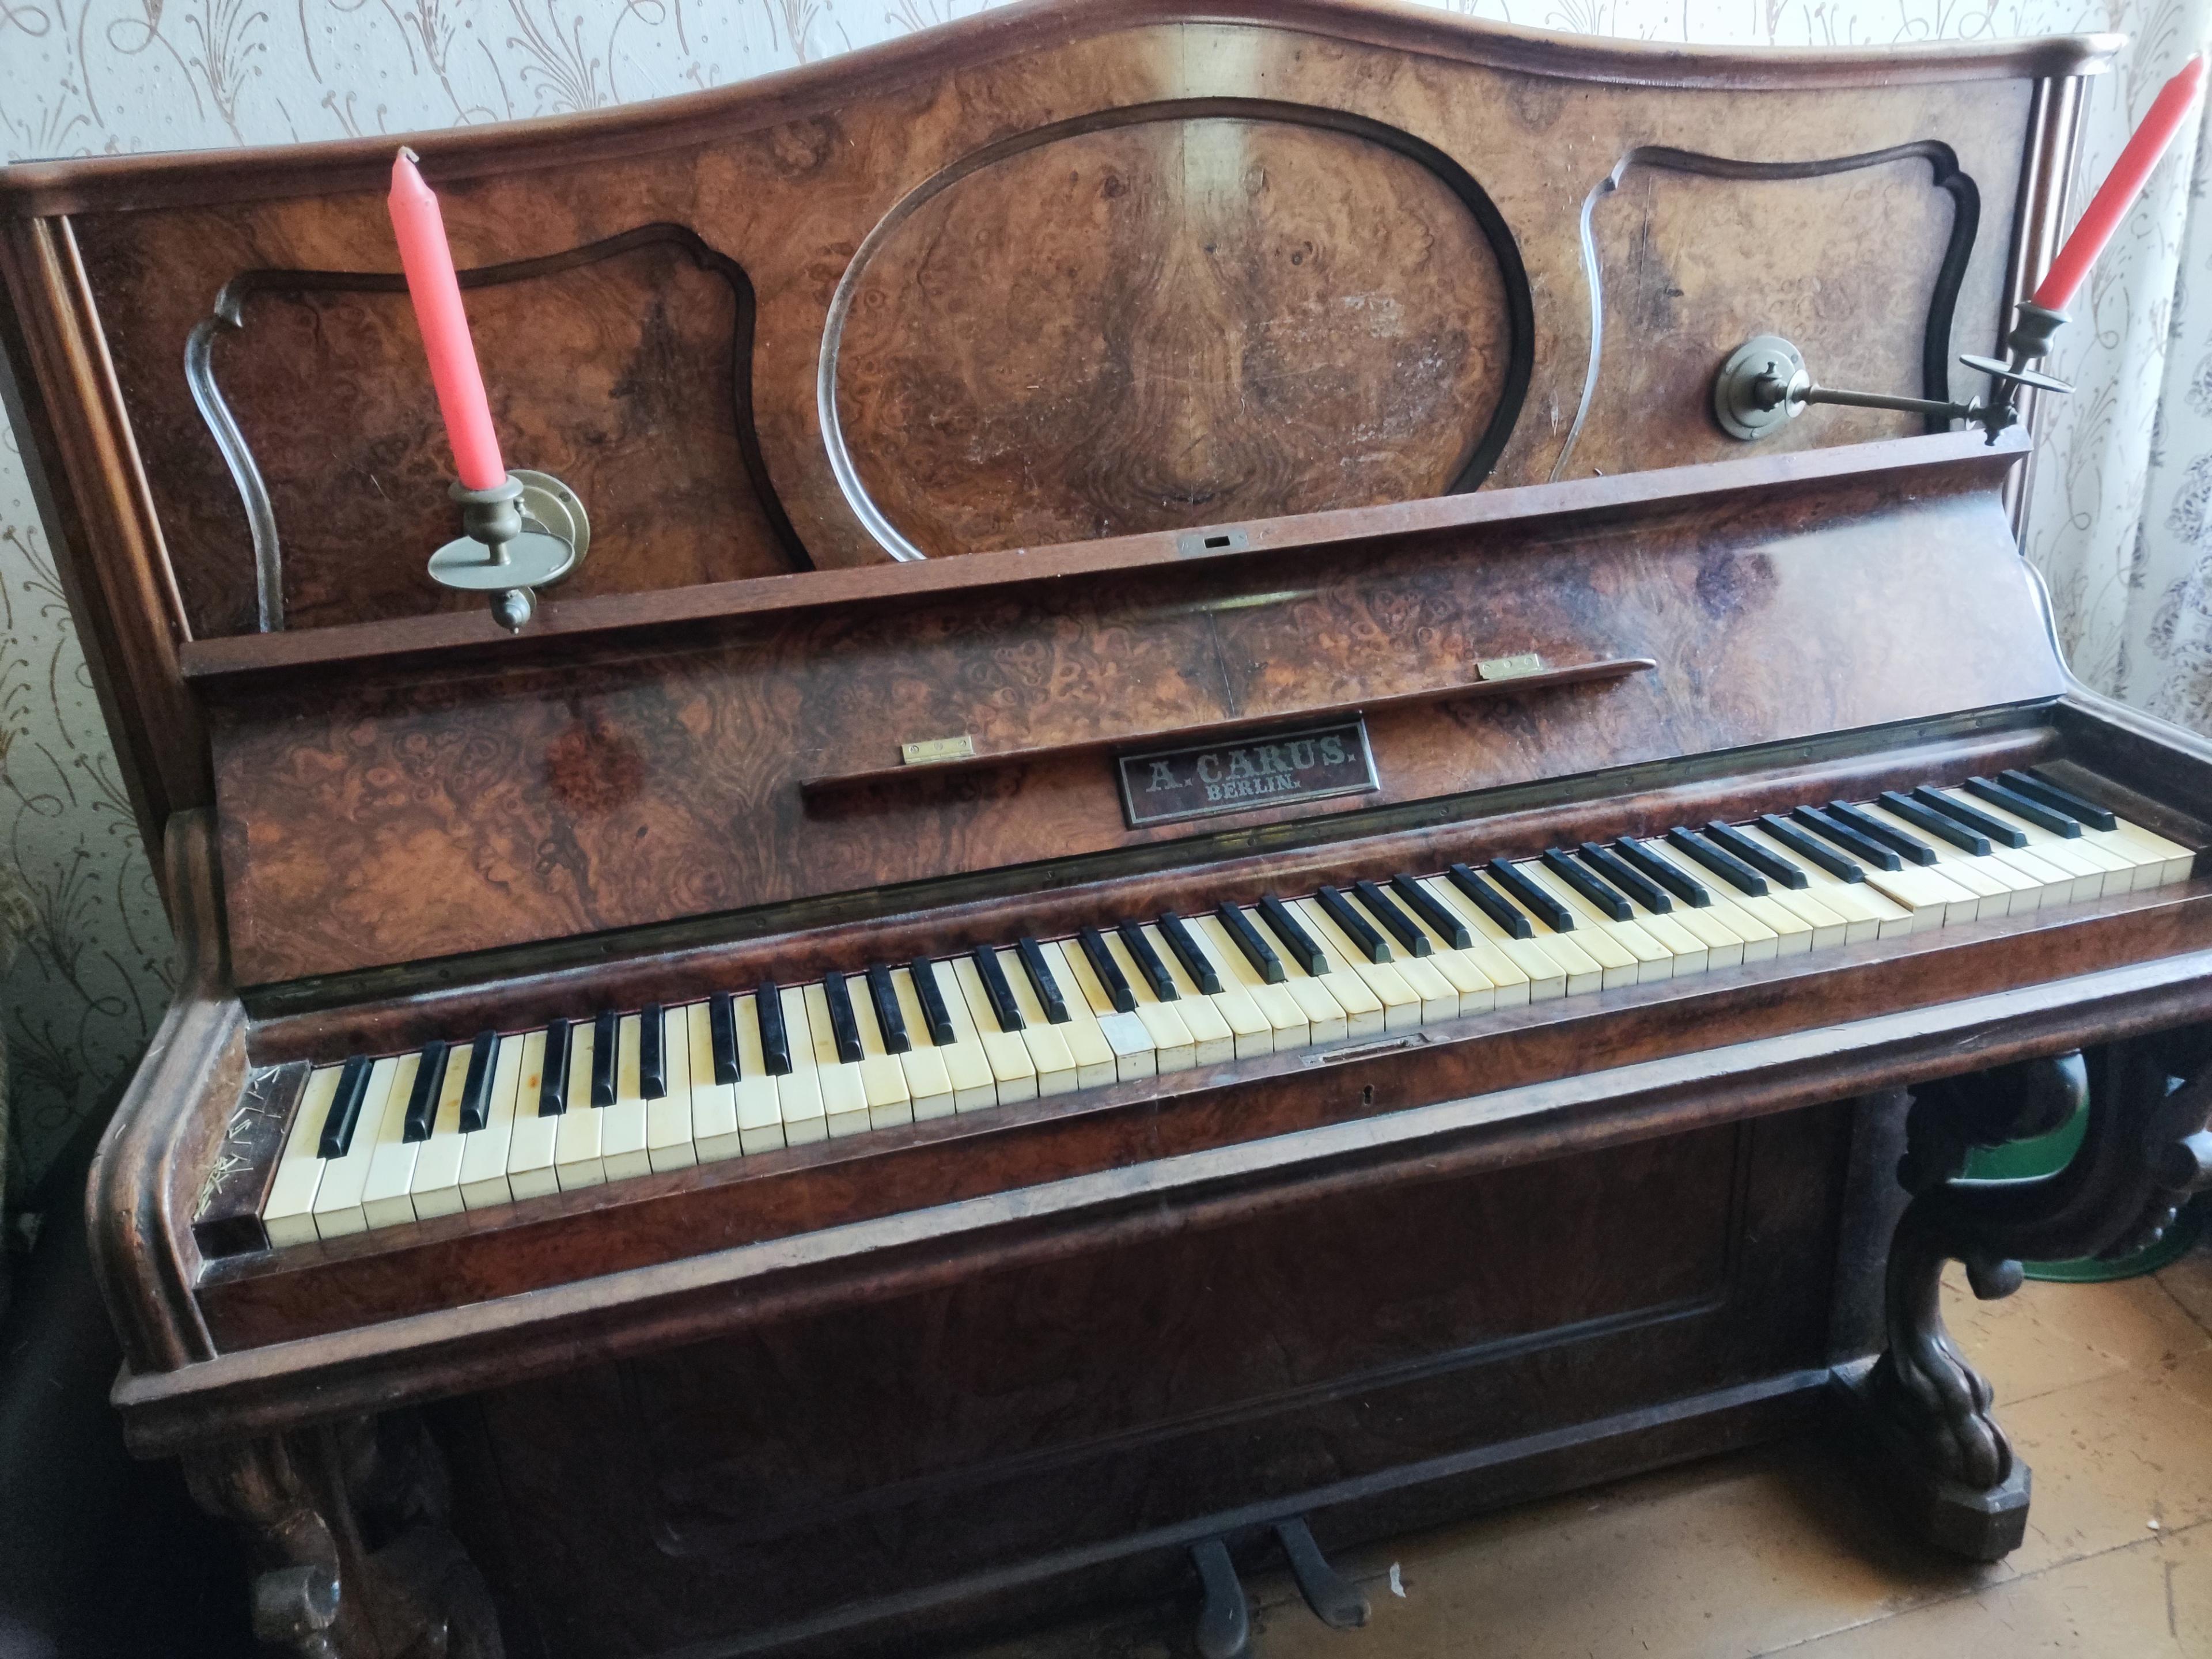 Co to może być za pianino? 